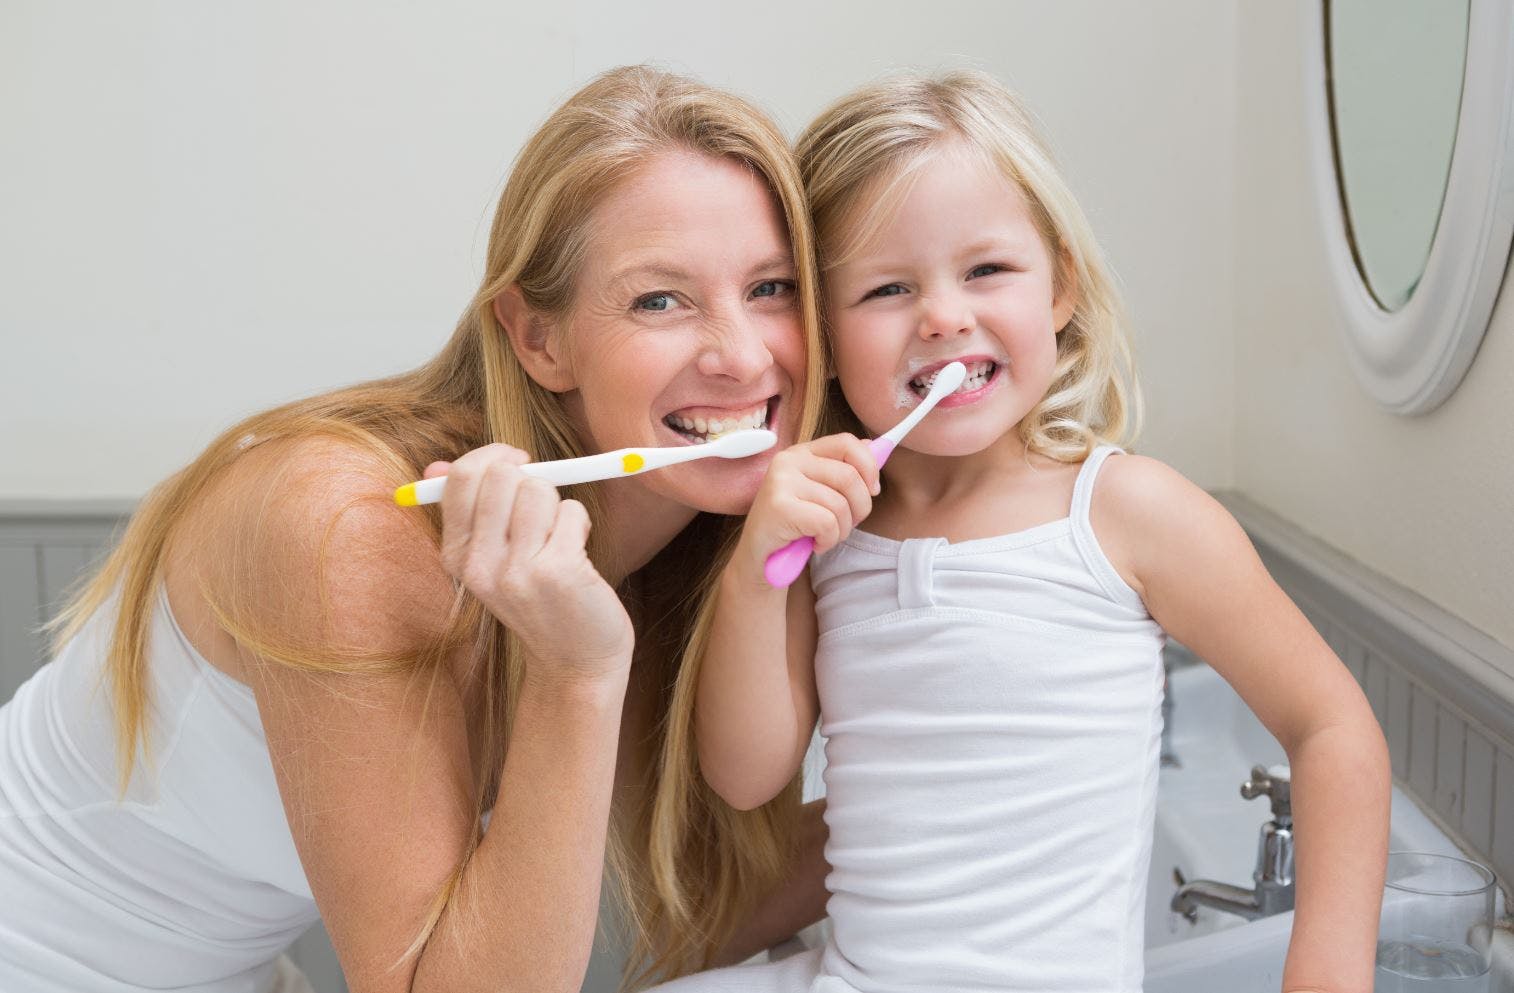 Det er en god idé at hjælpe børn med tandbørstningen til de bliver 10 år.